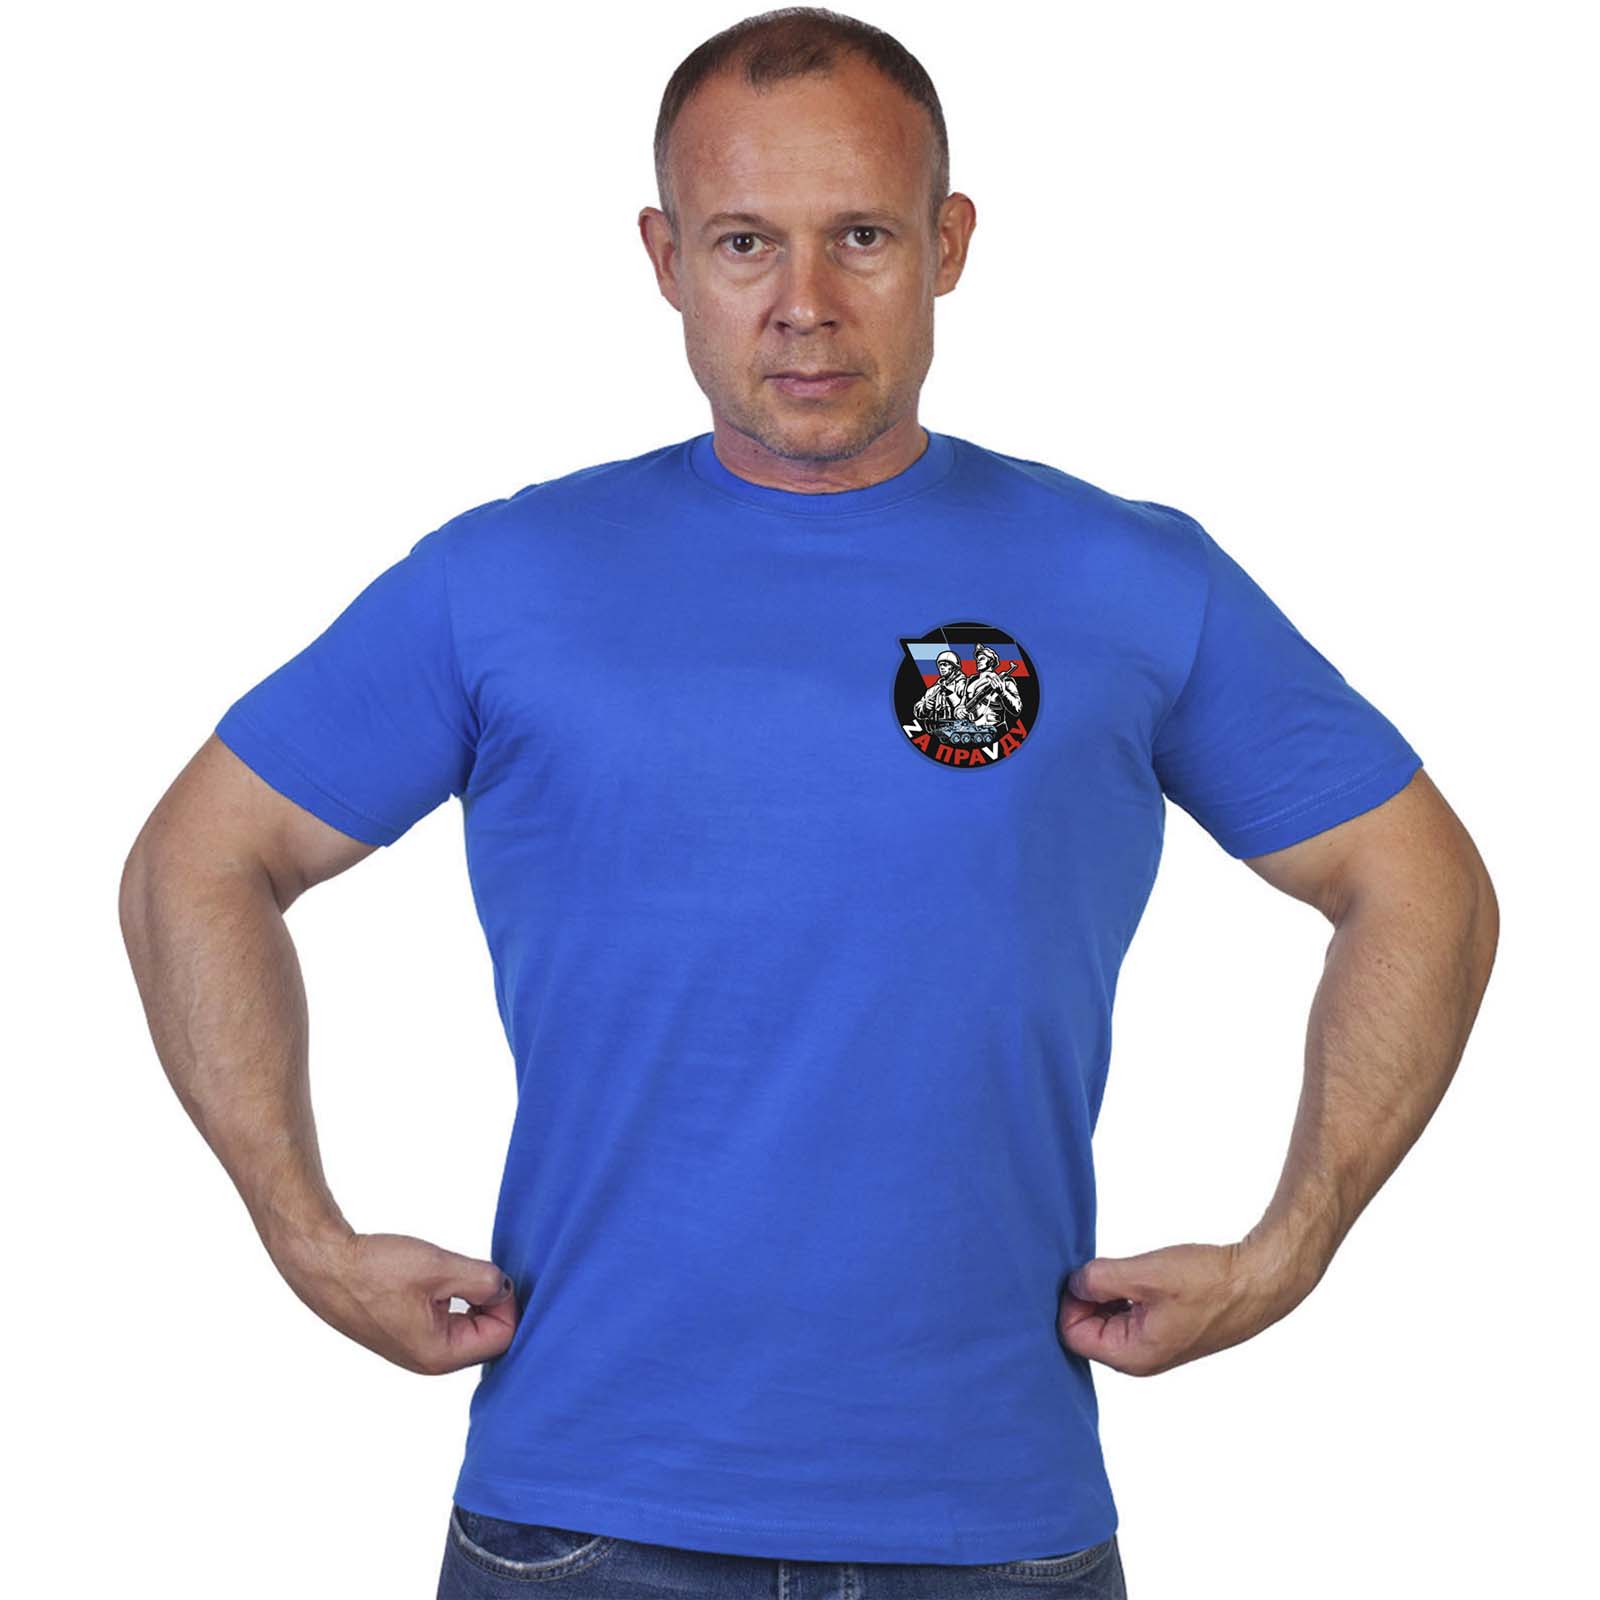 Васильковая футболка с надписью "Zа праVду"